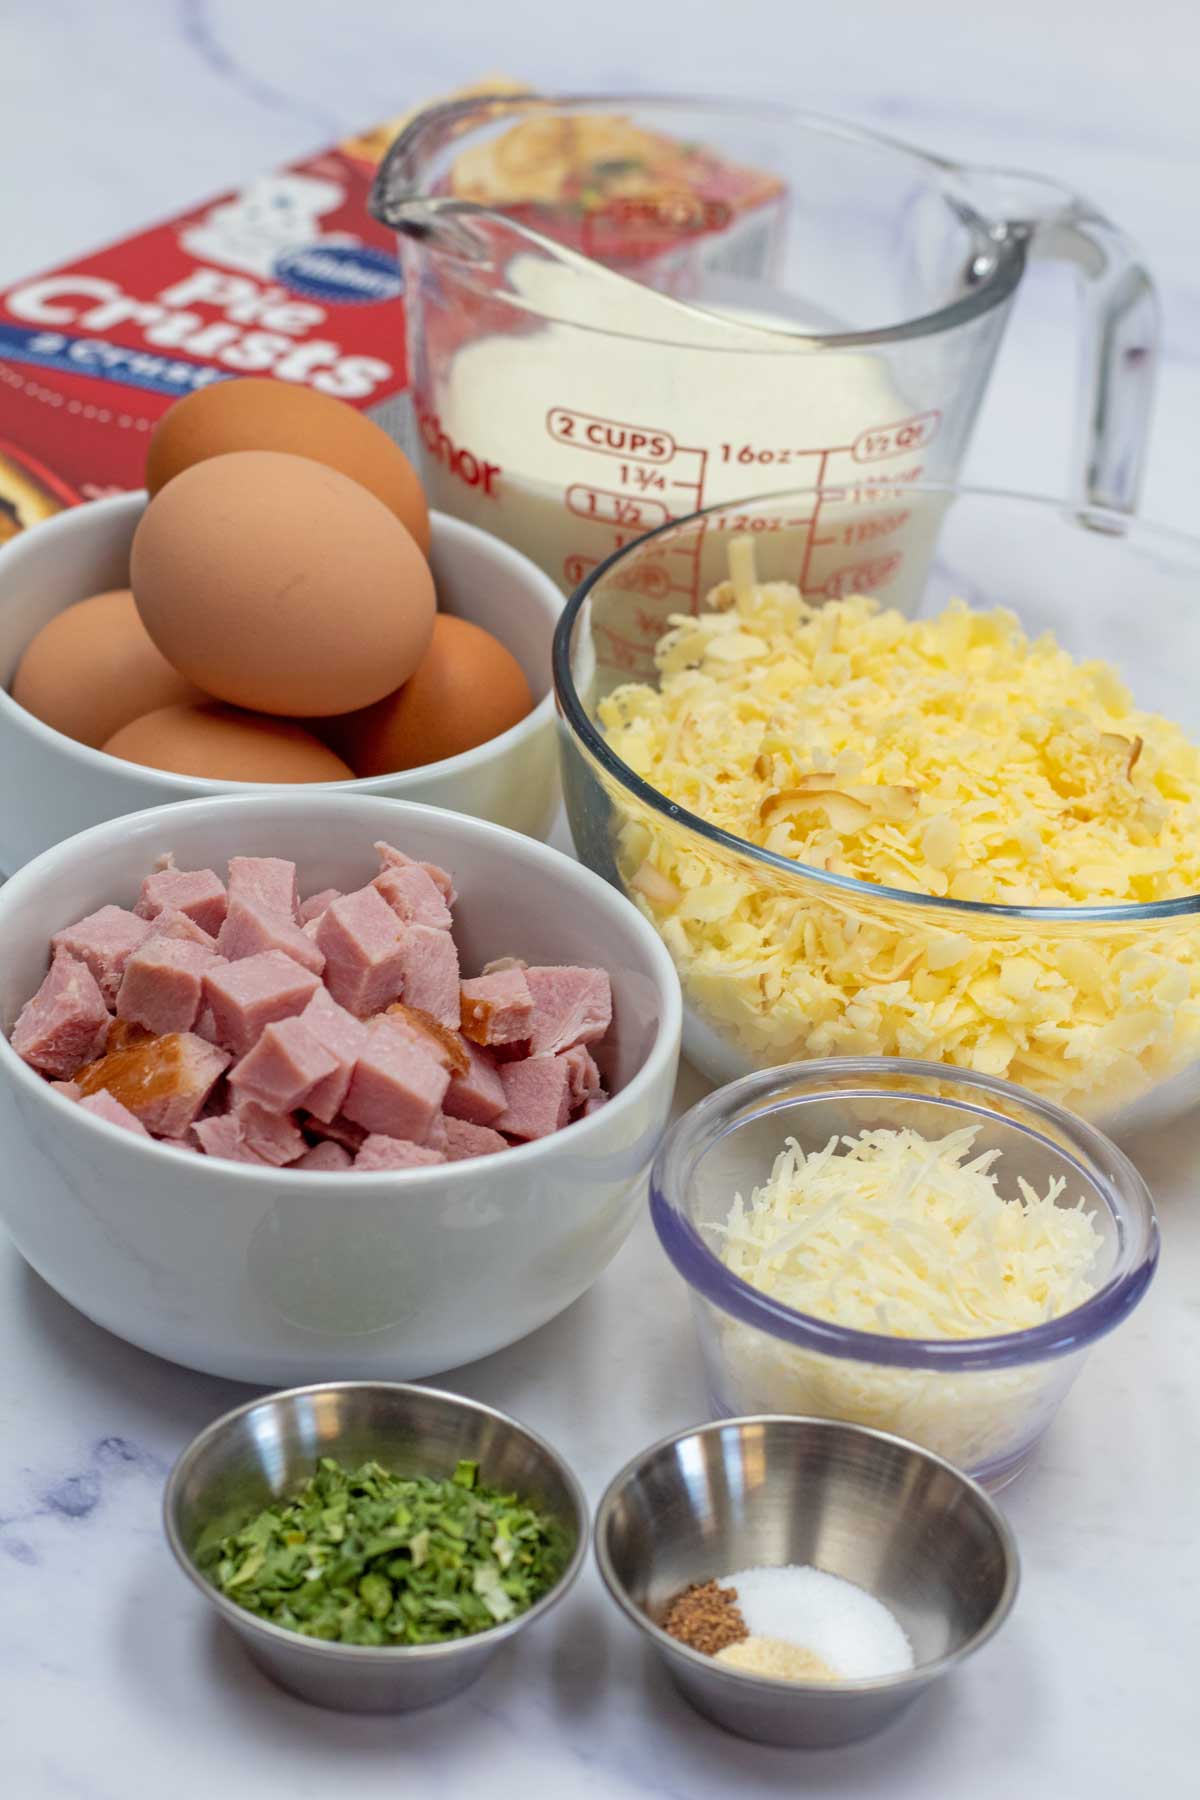 Immagine alta che mostra gli ingredienti della quiche di prosciutto e formaggio.